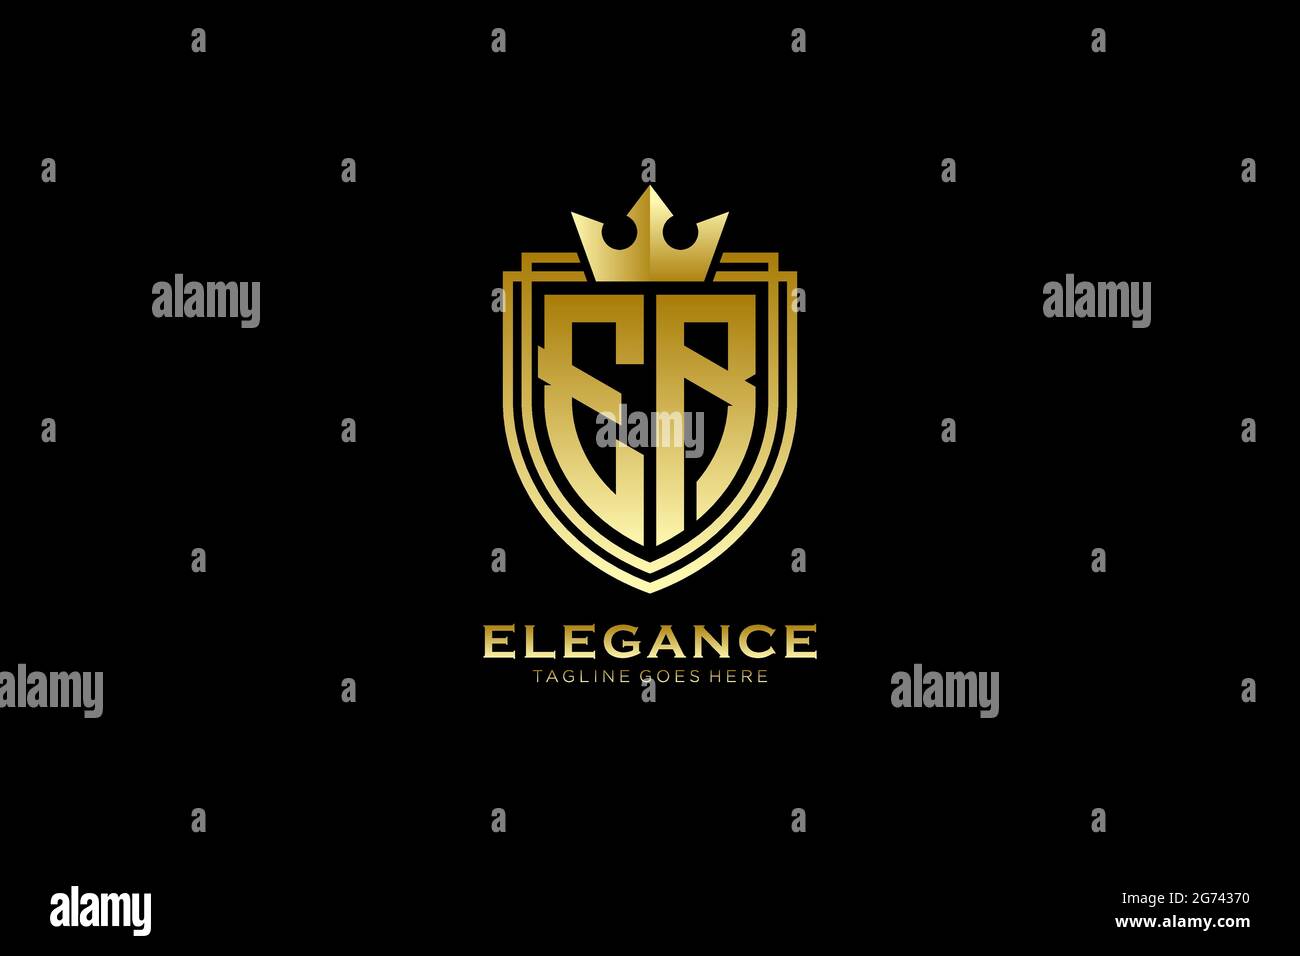 ER Elegantes Luxus-Monogramm-Logo oder Badge-Vorlage mit Rollen und königlicher Krone - perfekt für luxuriöse Branding-Projekte Stock Vektor